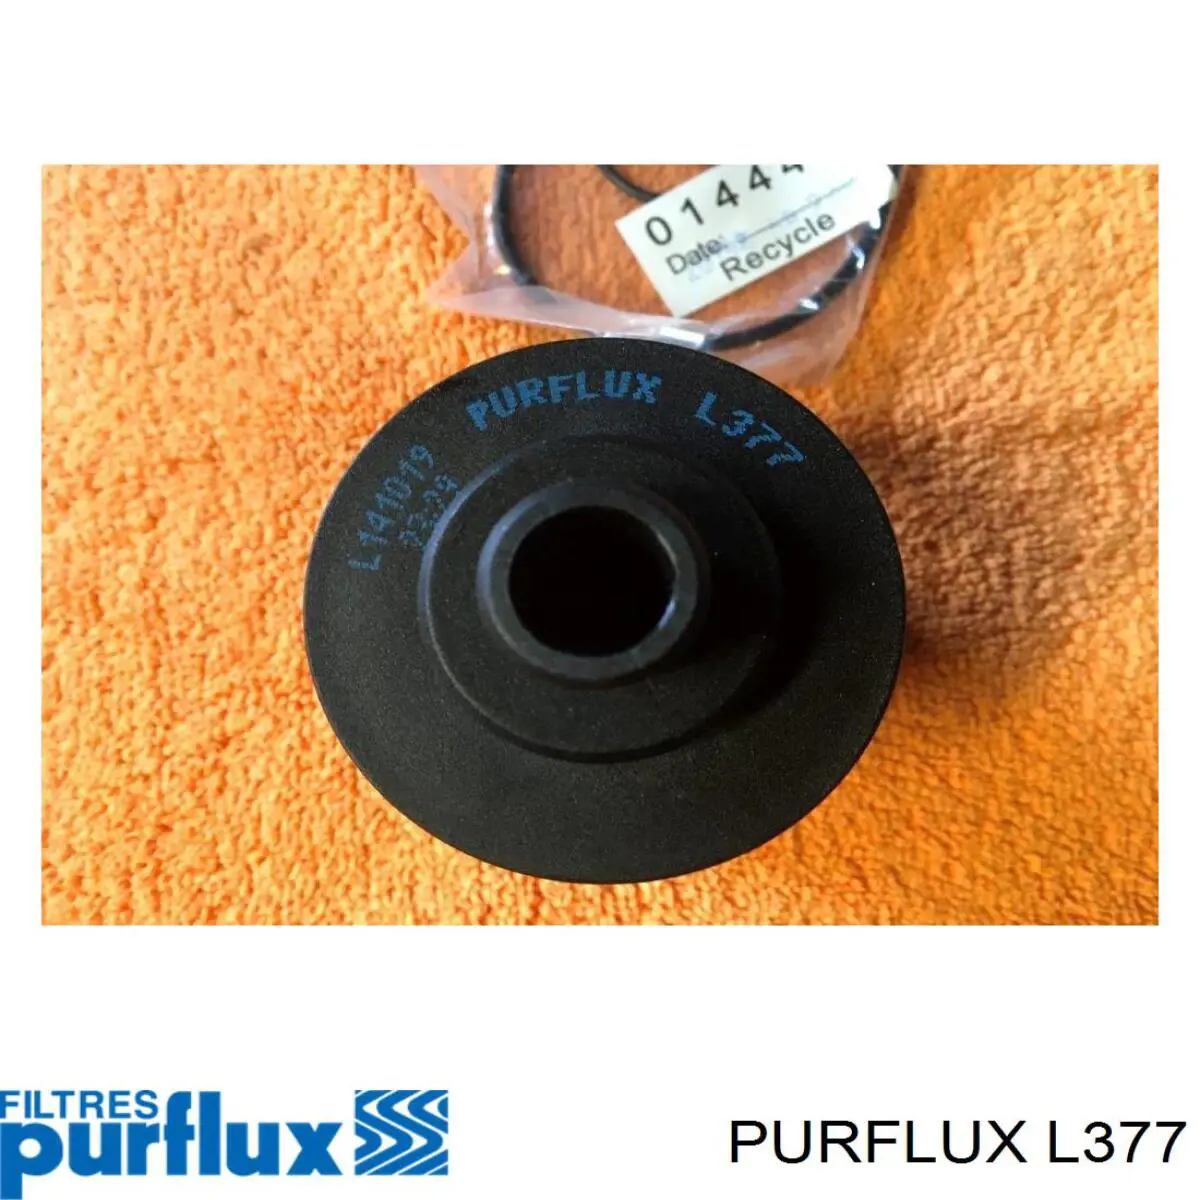 L377 Purflux filtro de aceite